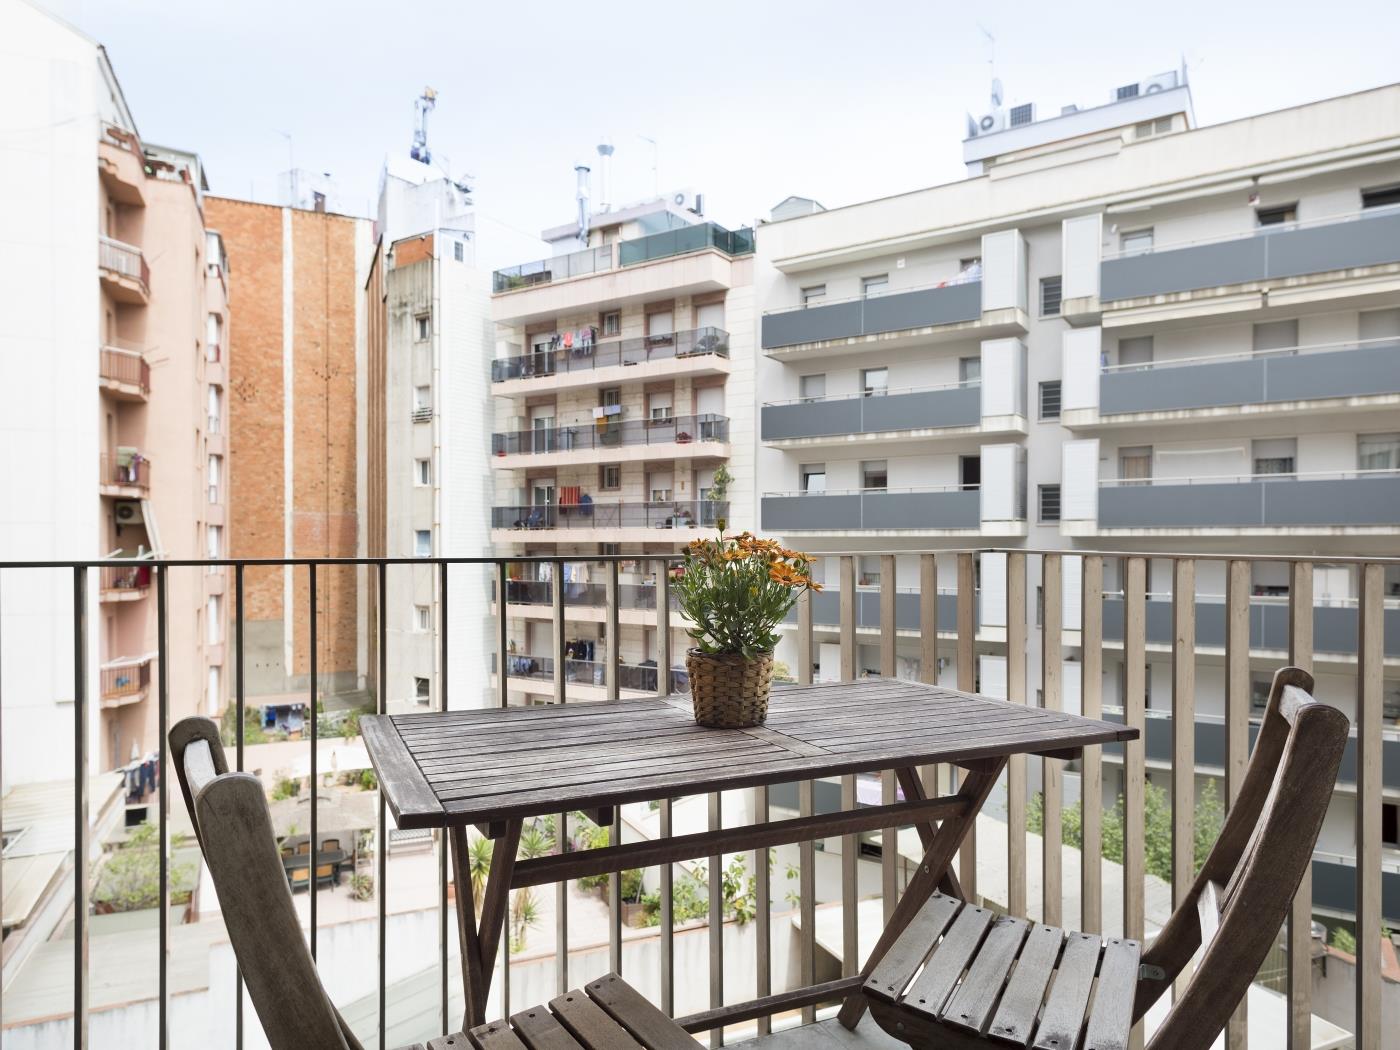 Appartamento con piscina al quartiere Gotico di Barcellona - My Space Barcelona Appartamenti